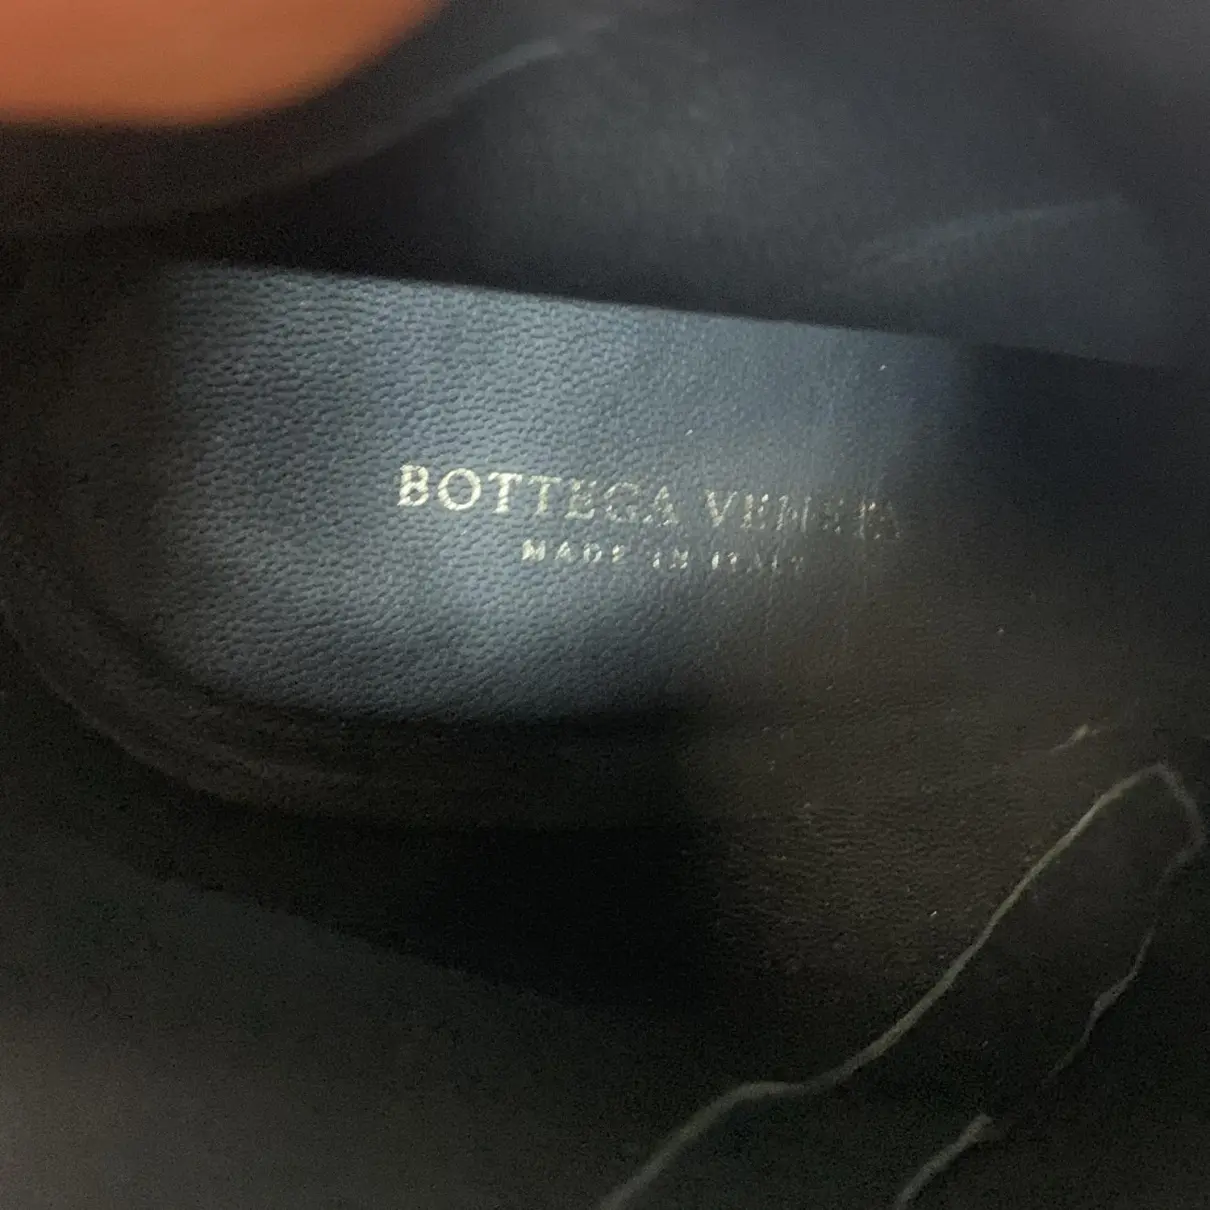 Buy Bottega Veneta Ankle boots online